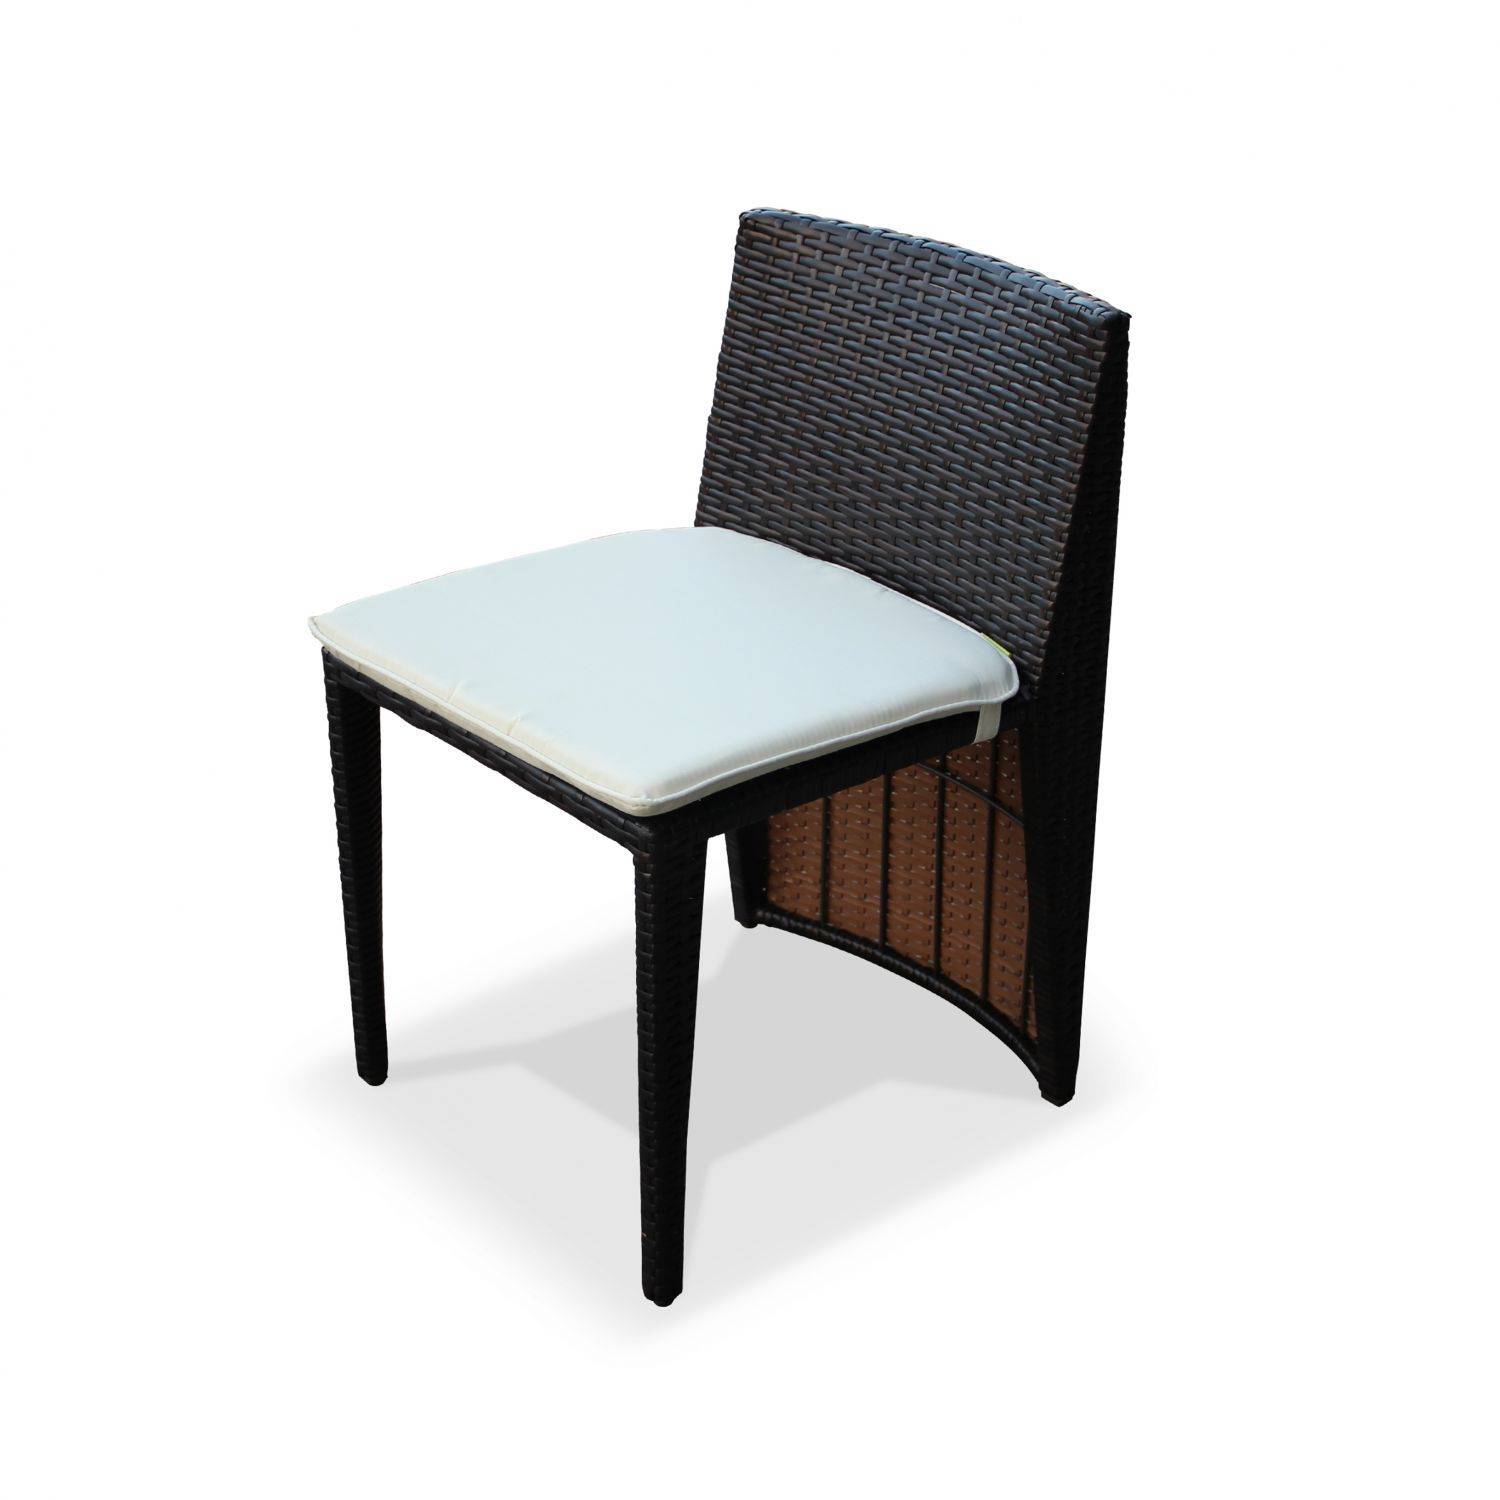 Gartentisch aus Kunststoffrattan - Doppio - schokoladenfarben, ecrufarben-Kissen - 2 Plätze, eingebaut für Balkon und Terrasse Photo6